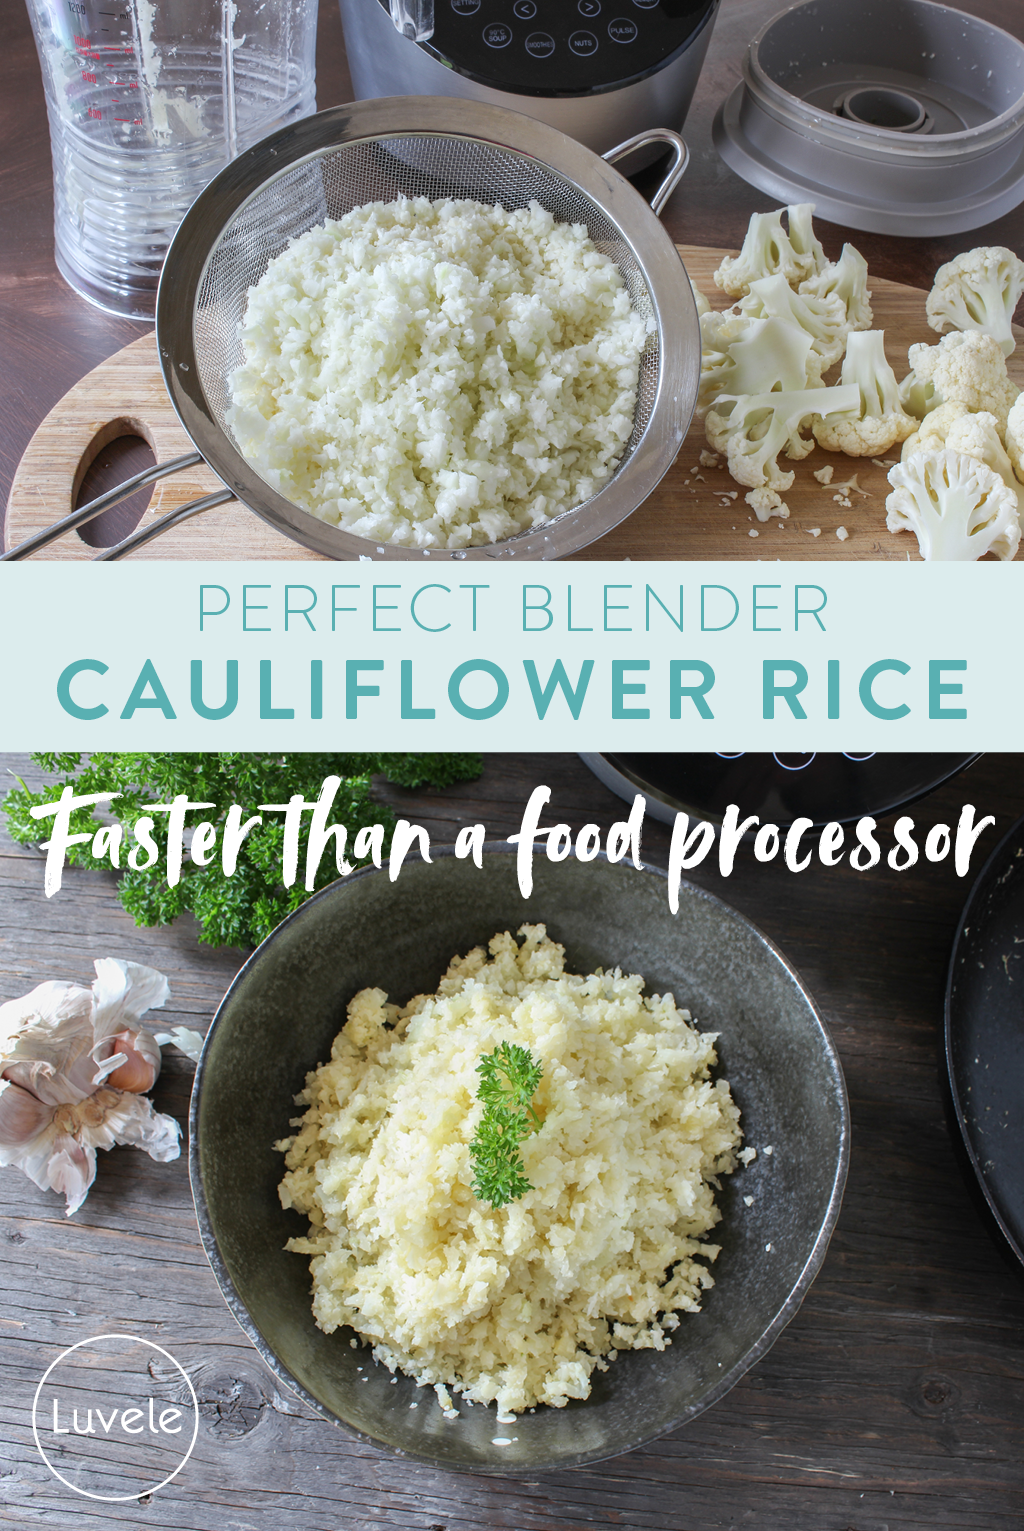 Blender cauliflower rice